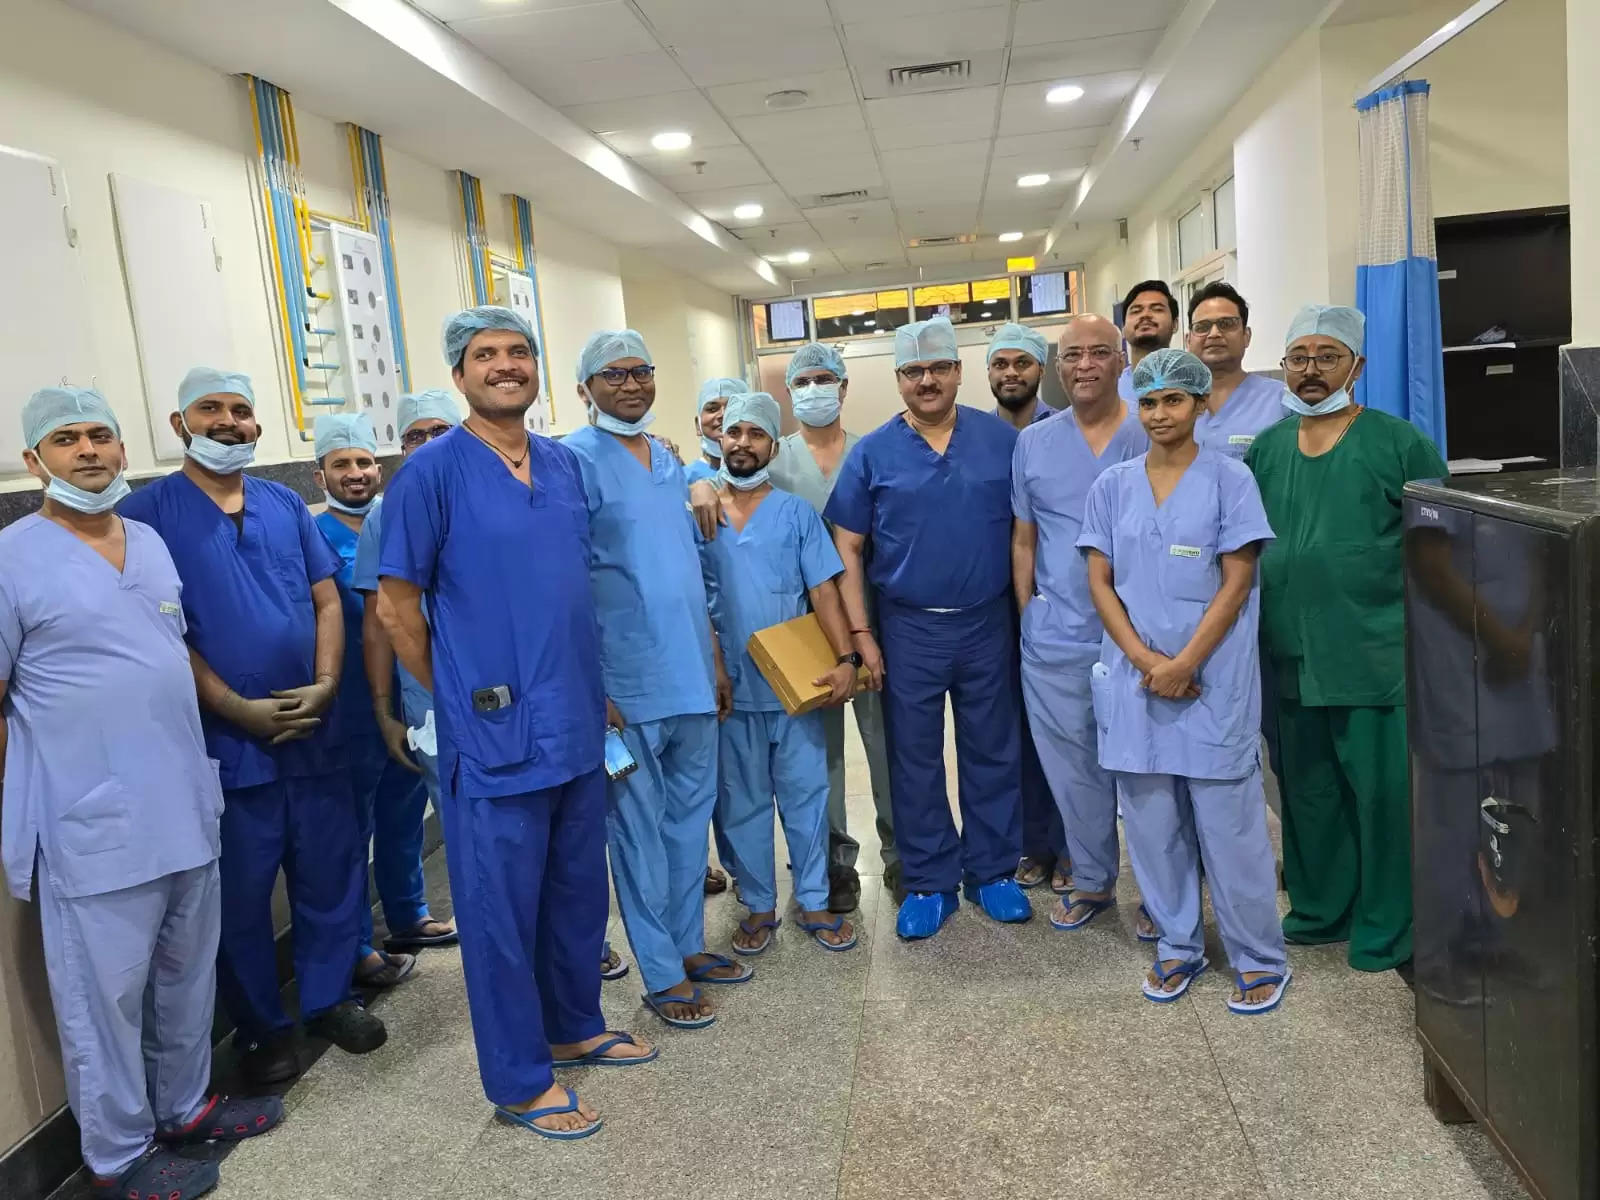 उपलब्धि: अब बीएचयू के हृदय रोग विभाग में छोटे चीरे से हृदय की कोरोनरी बायपास सर्जरी